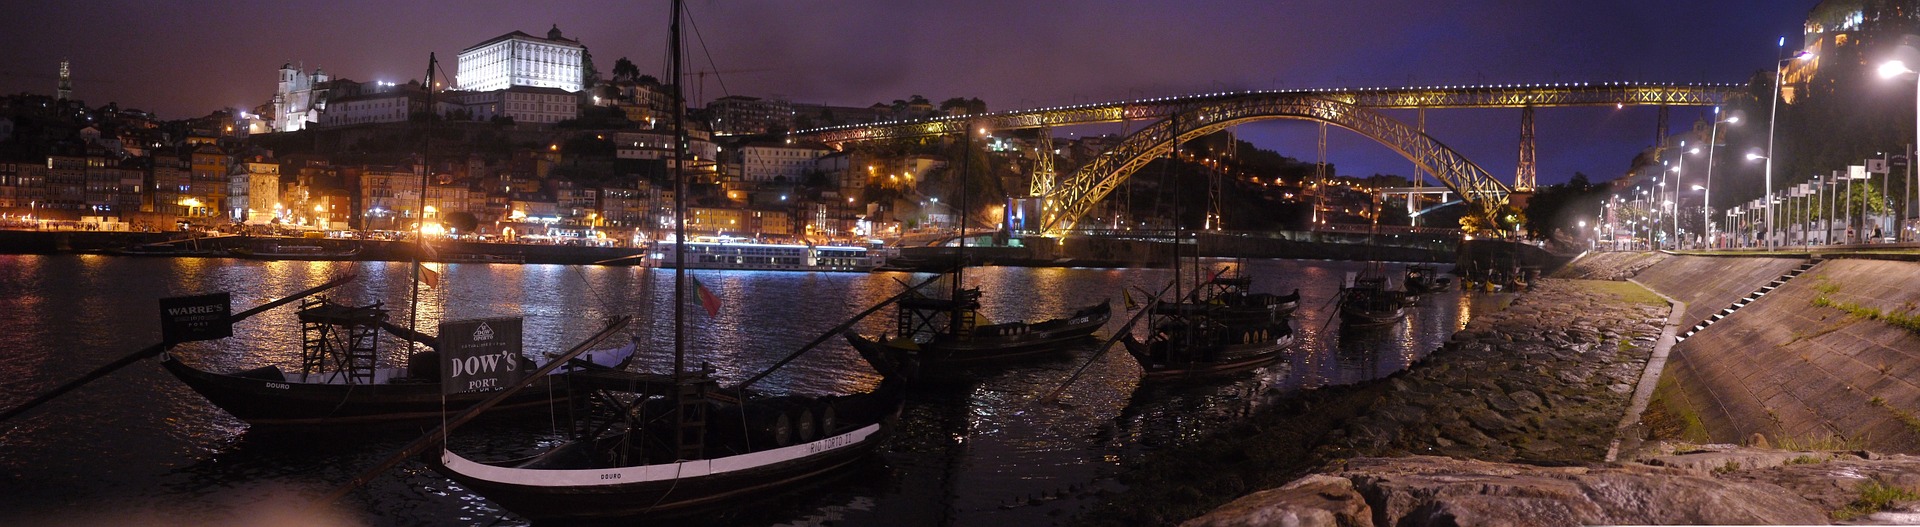 A night view in Porto, Portugal